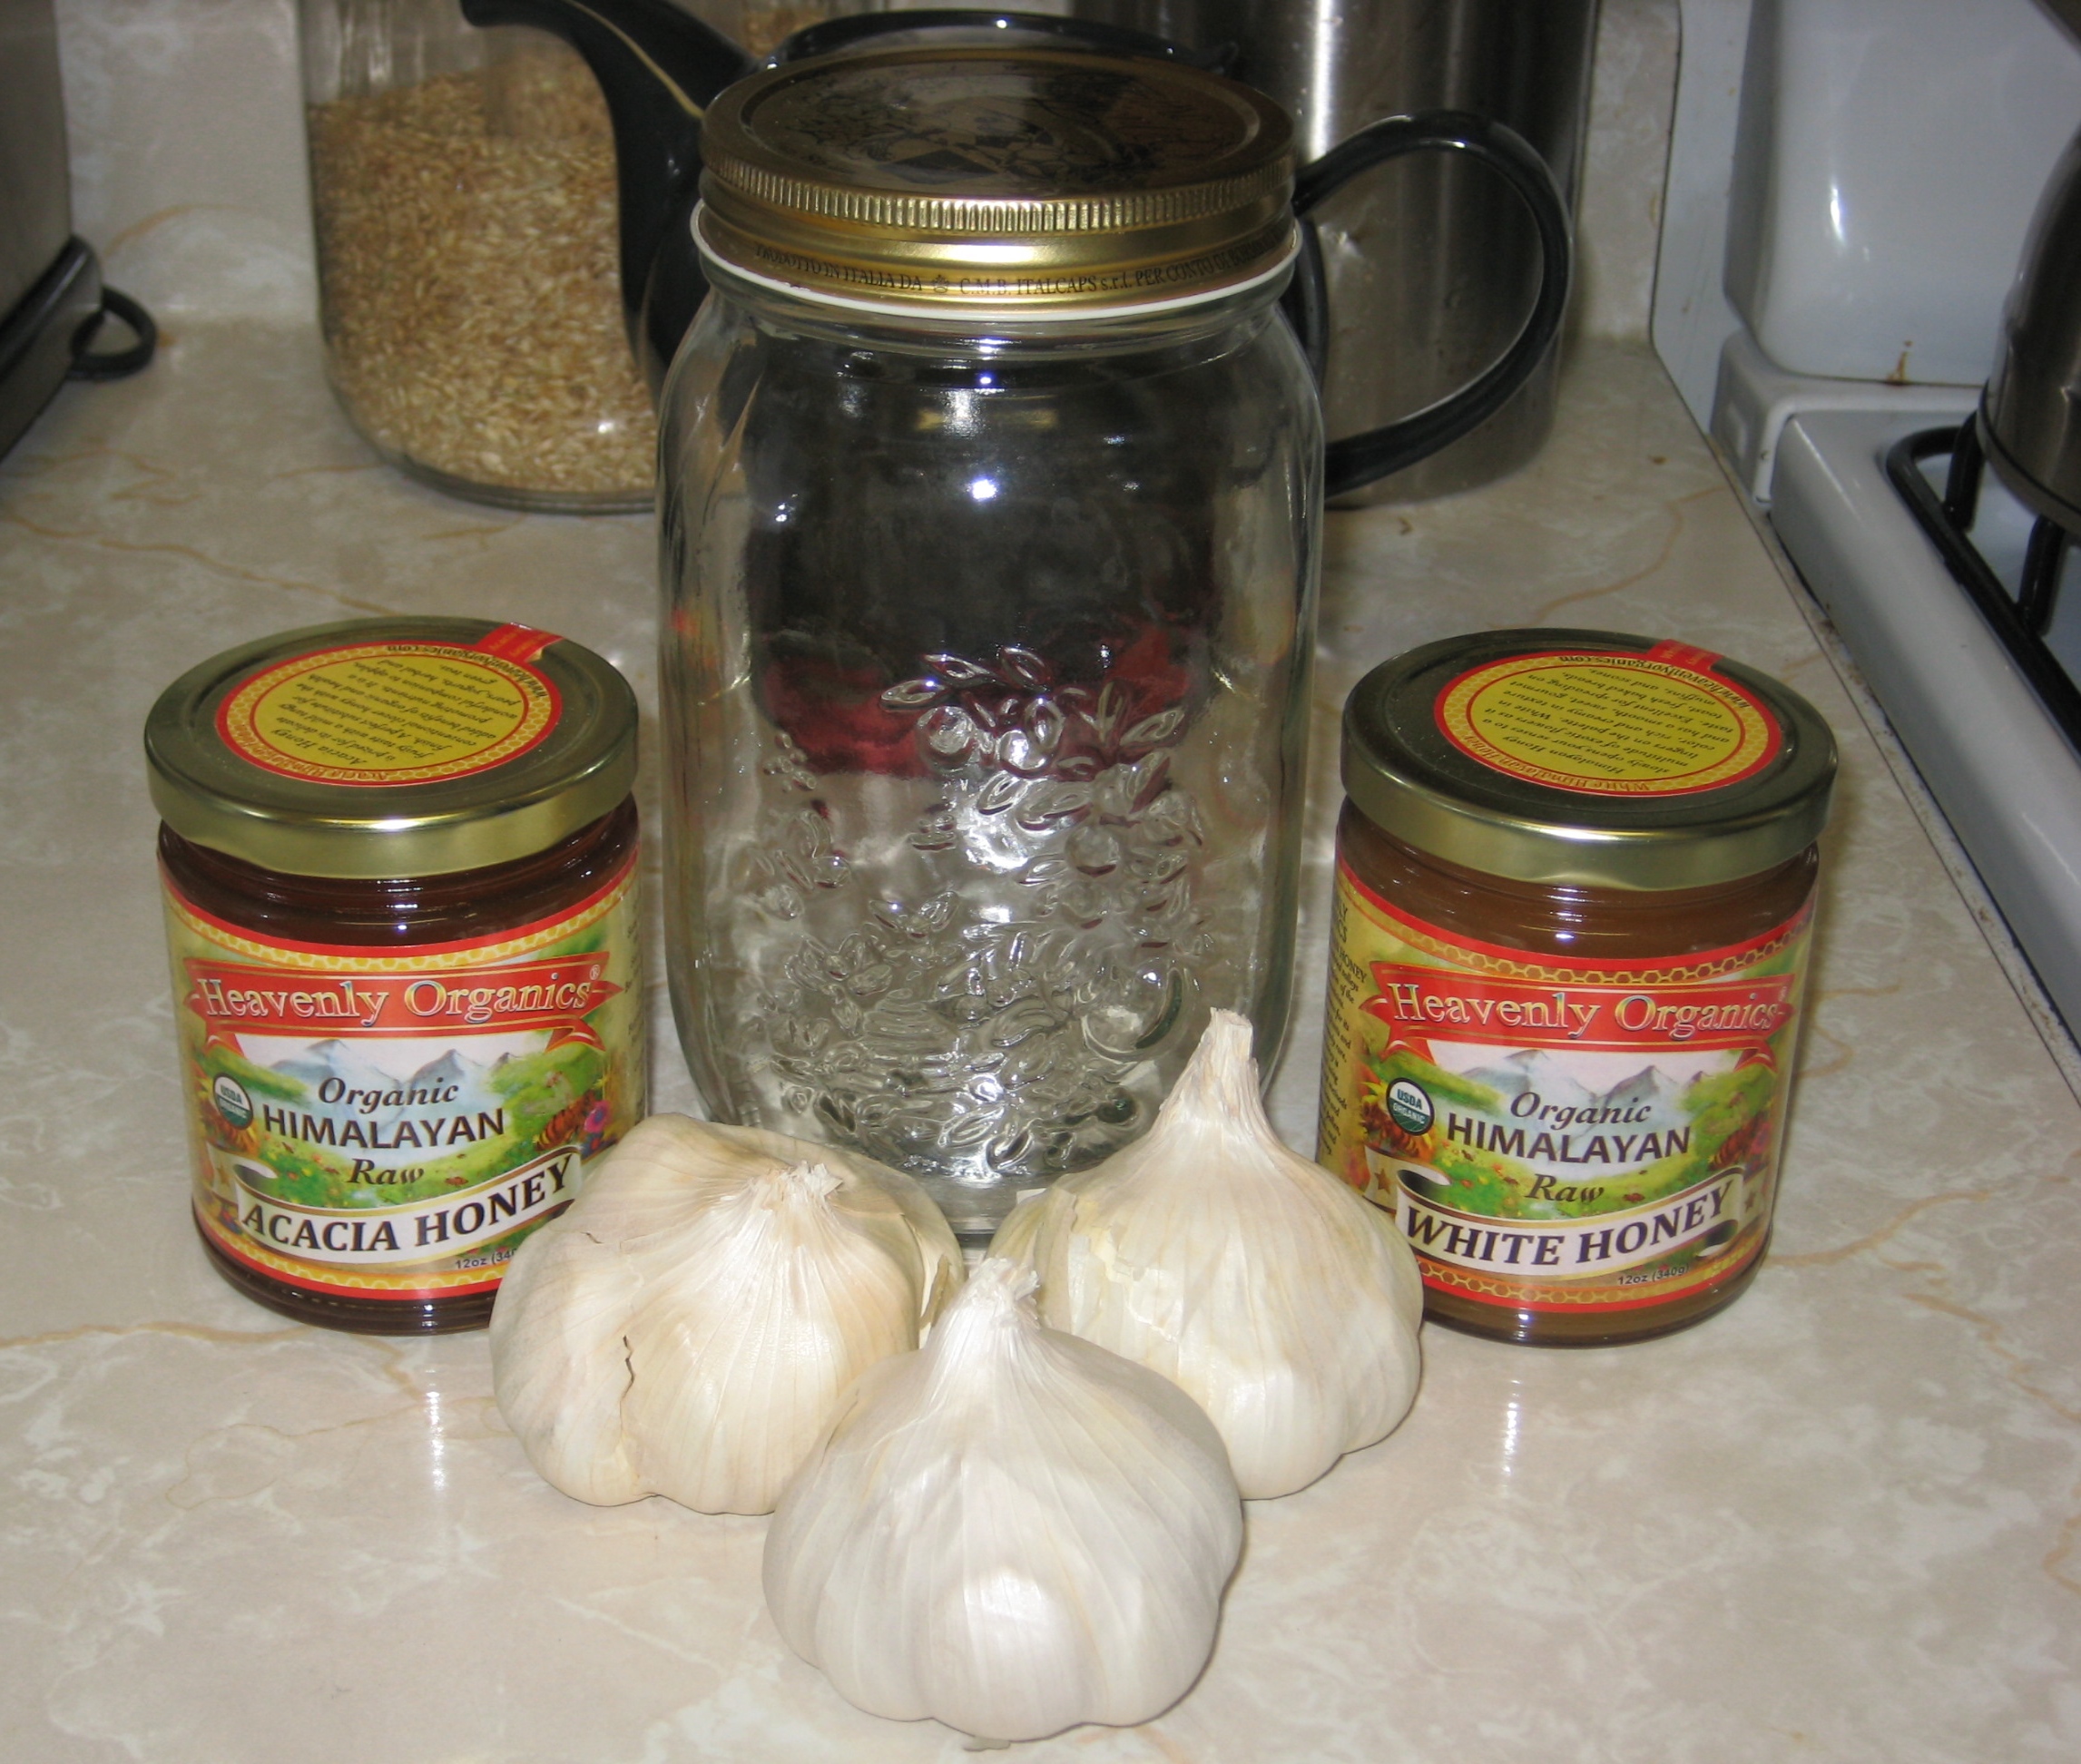 Garlic, honey, and jar... check!